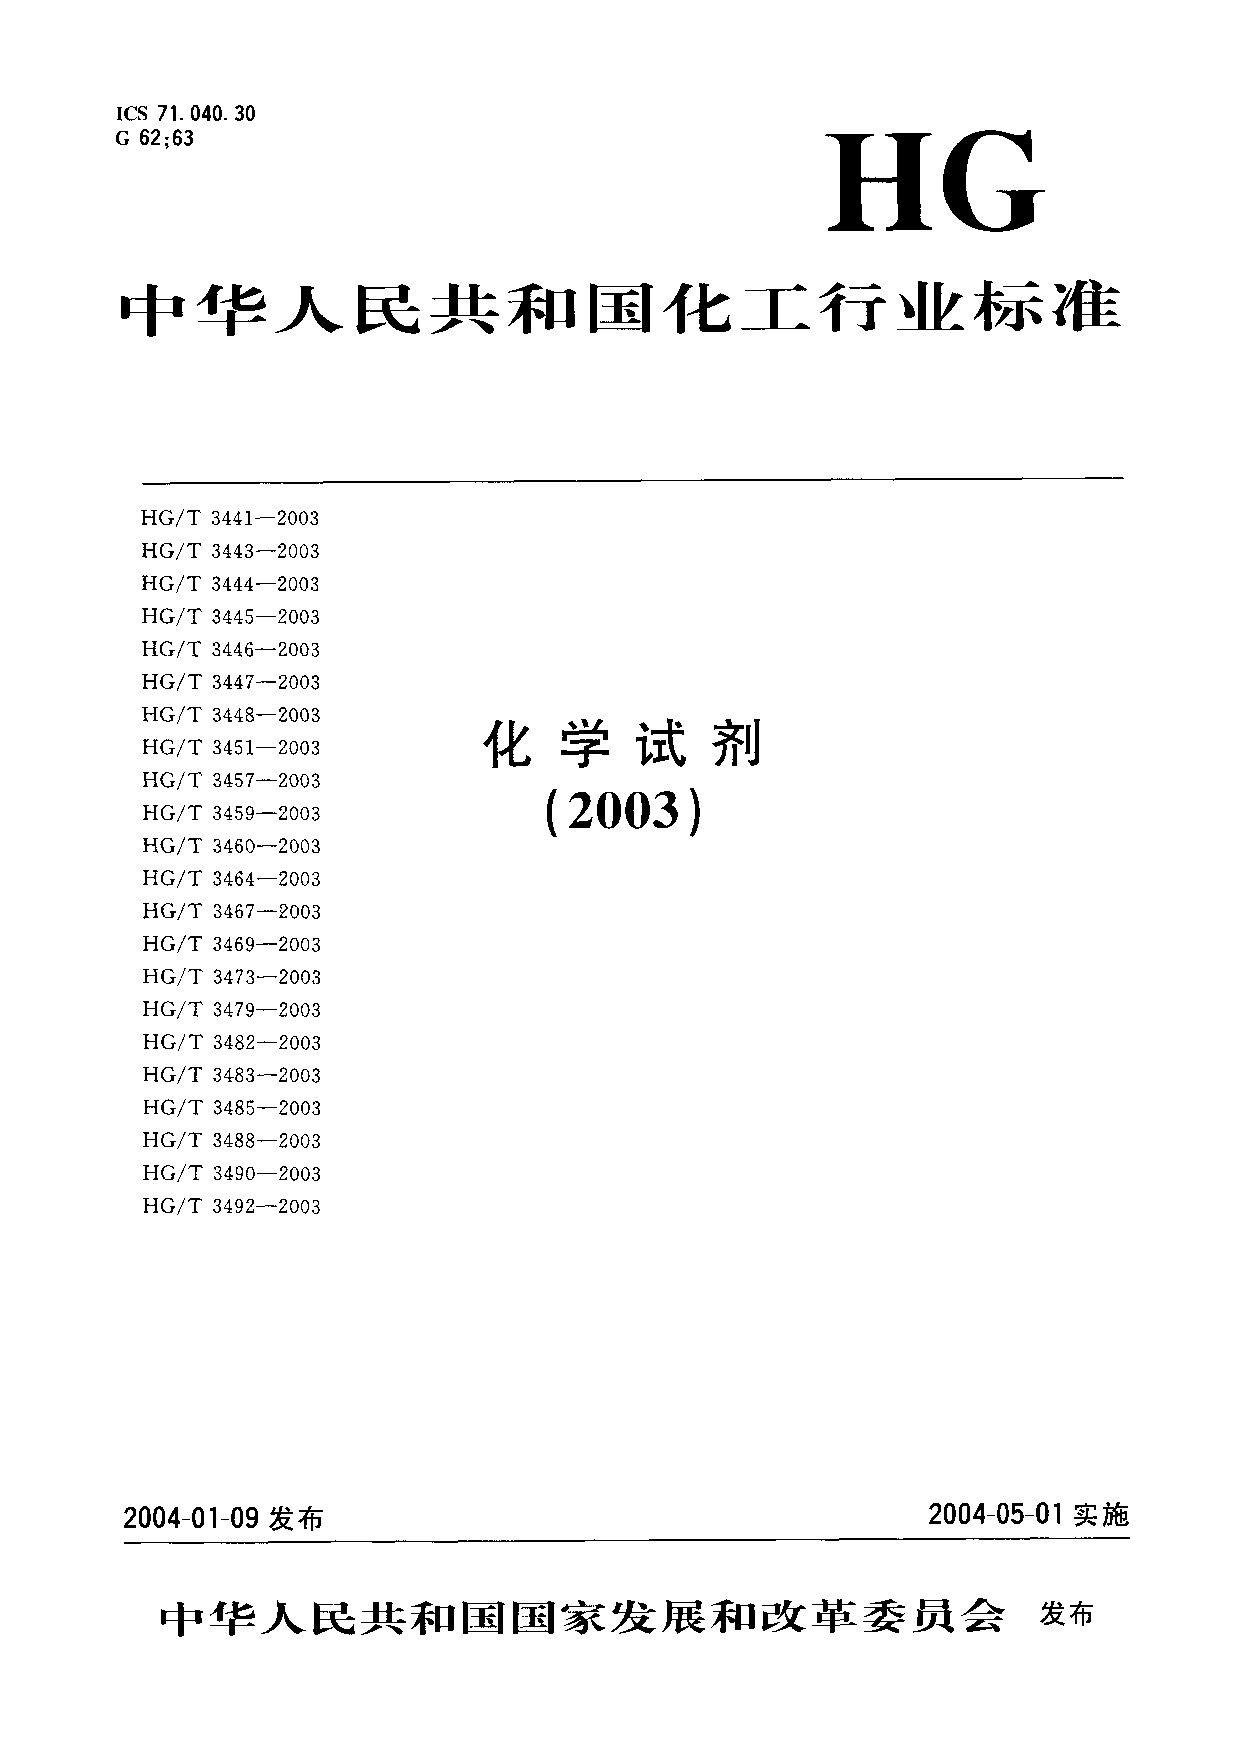 HG/T 3448-2003封面图